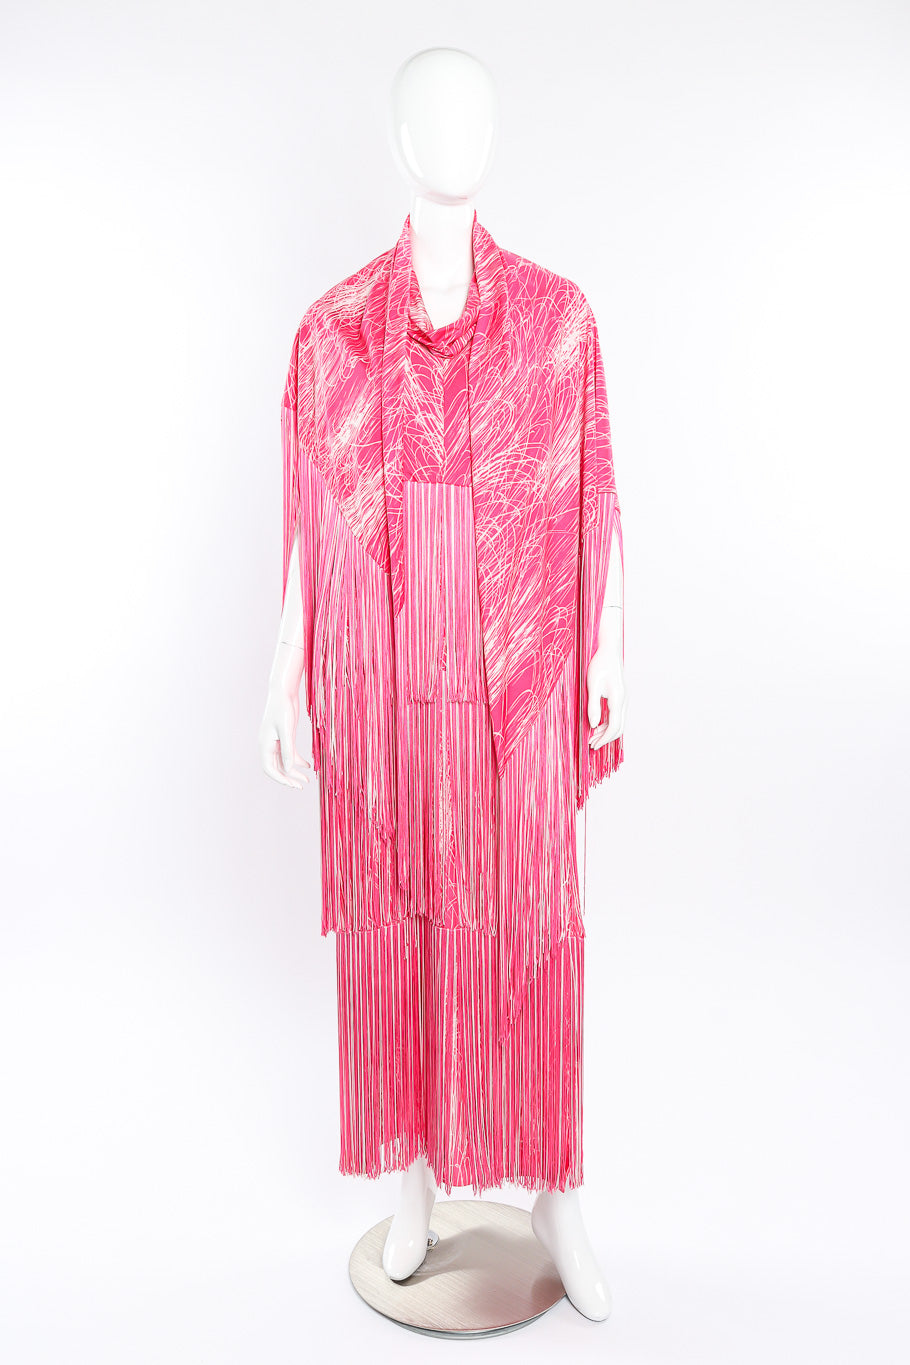 Vintage Lilli Diamond Halter Fringe Dress, Shawl & Belt Set front view of shawl on mannequin @Recessla